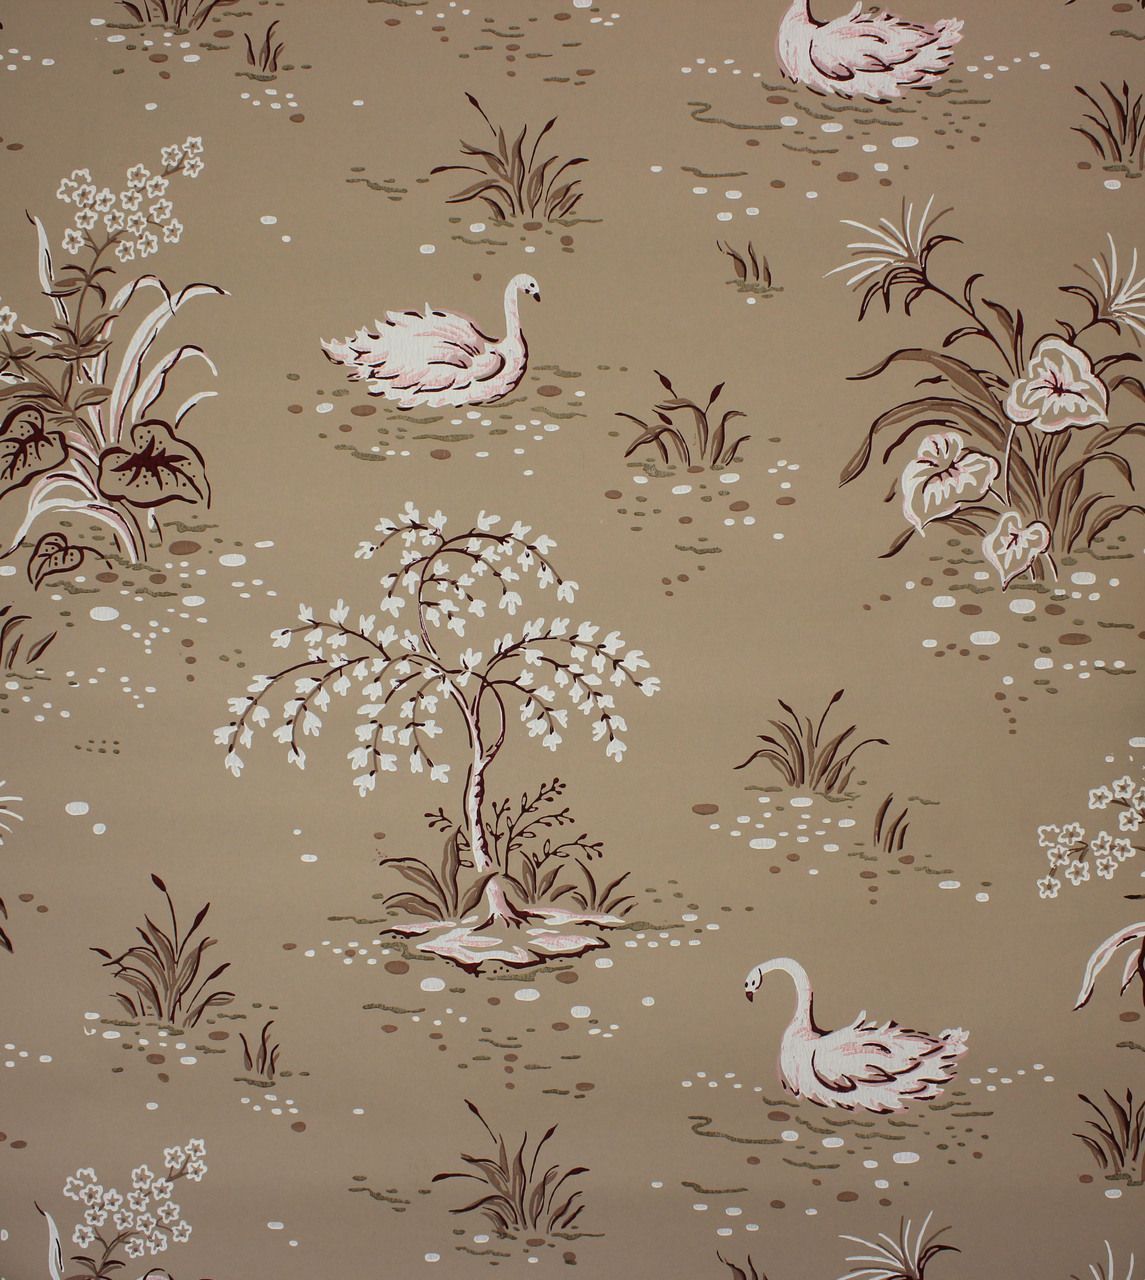 1940's Vintage Wallpaper Swans on Brown. Vintage wallpaper, Mural wallpaper, Swan wallpaper